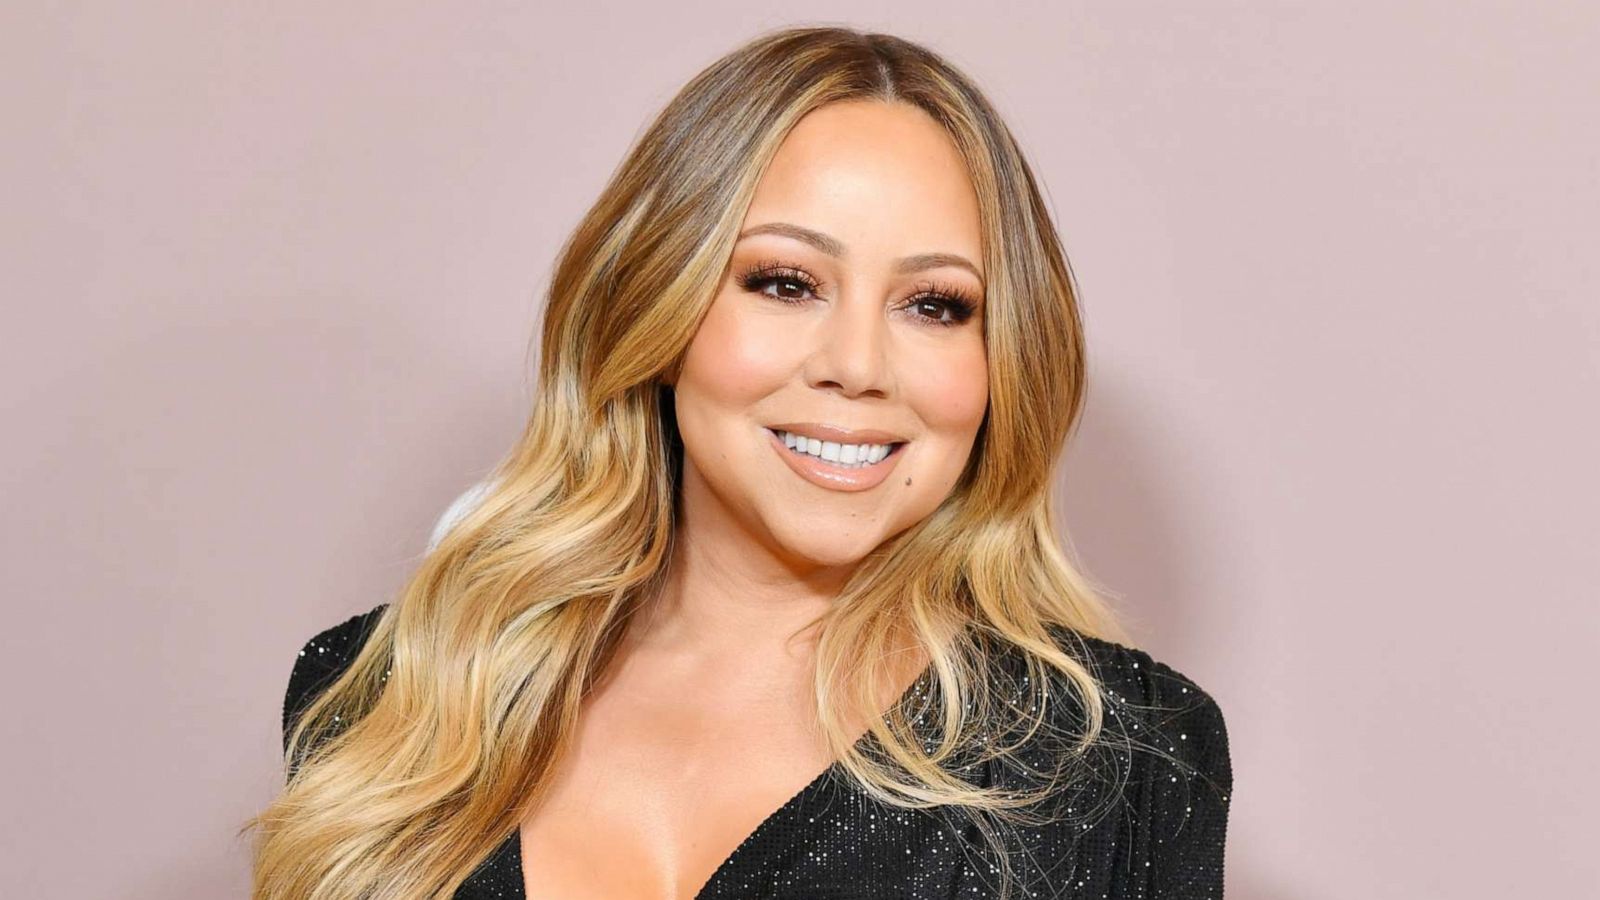 Berapa kekayaan bersih Mariah Carey?